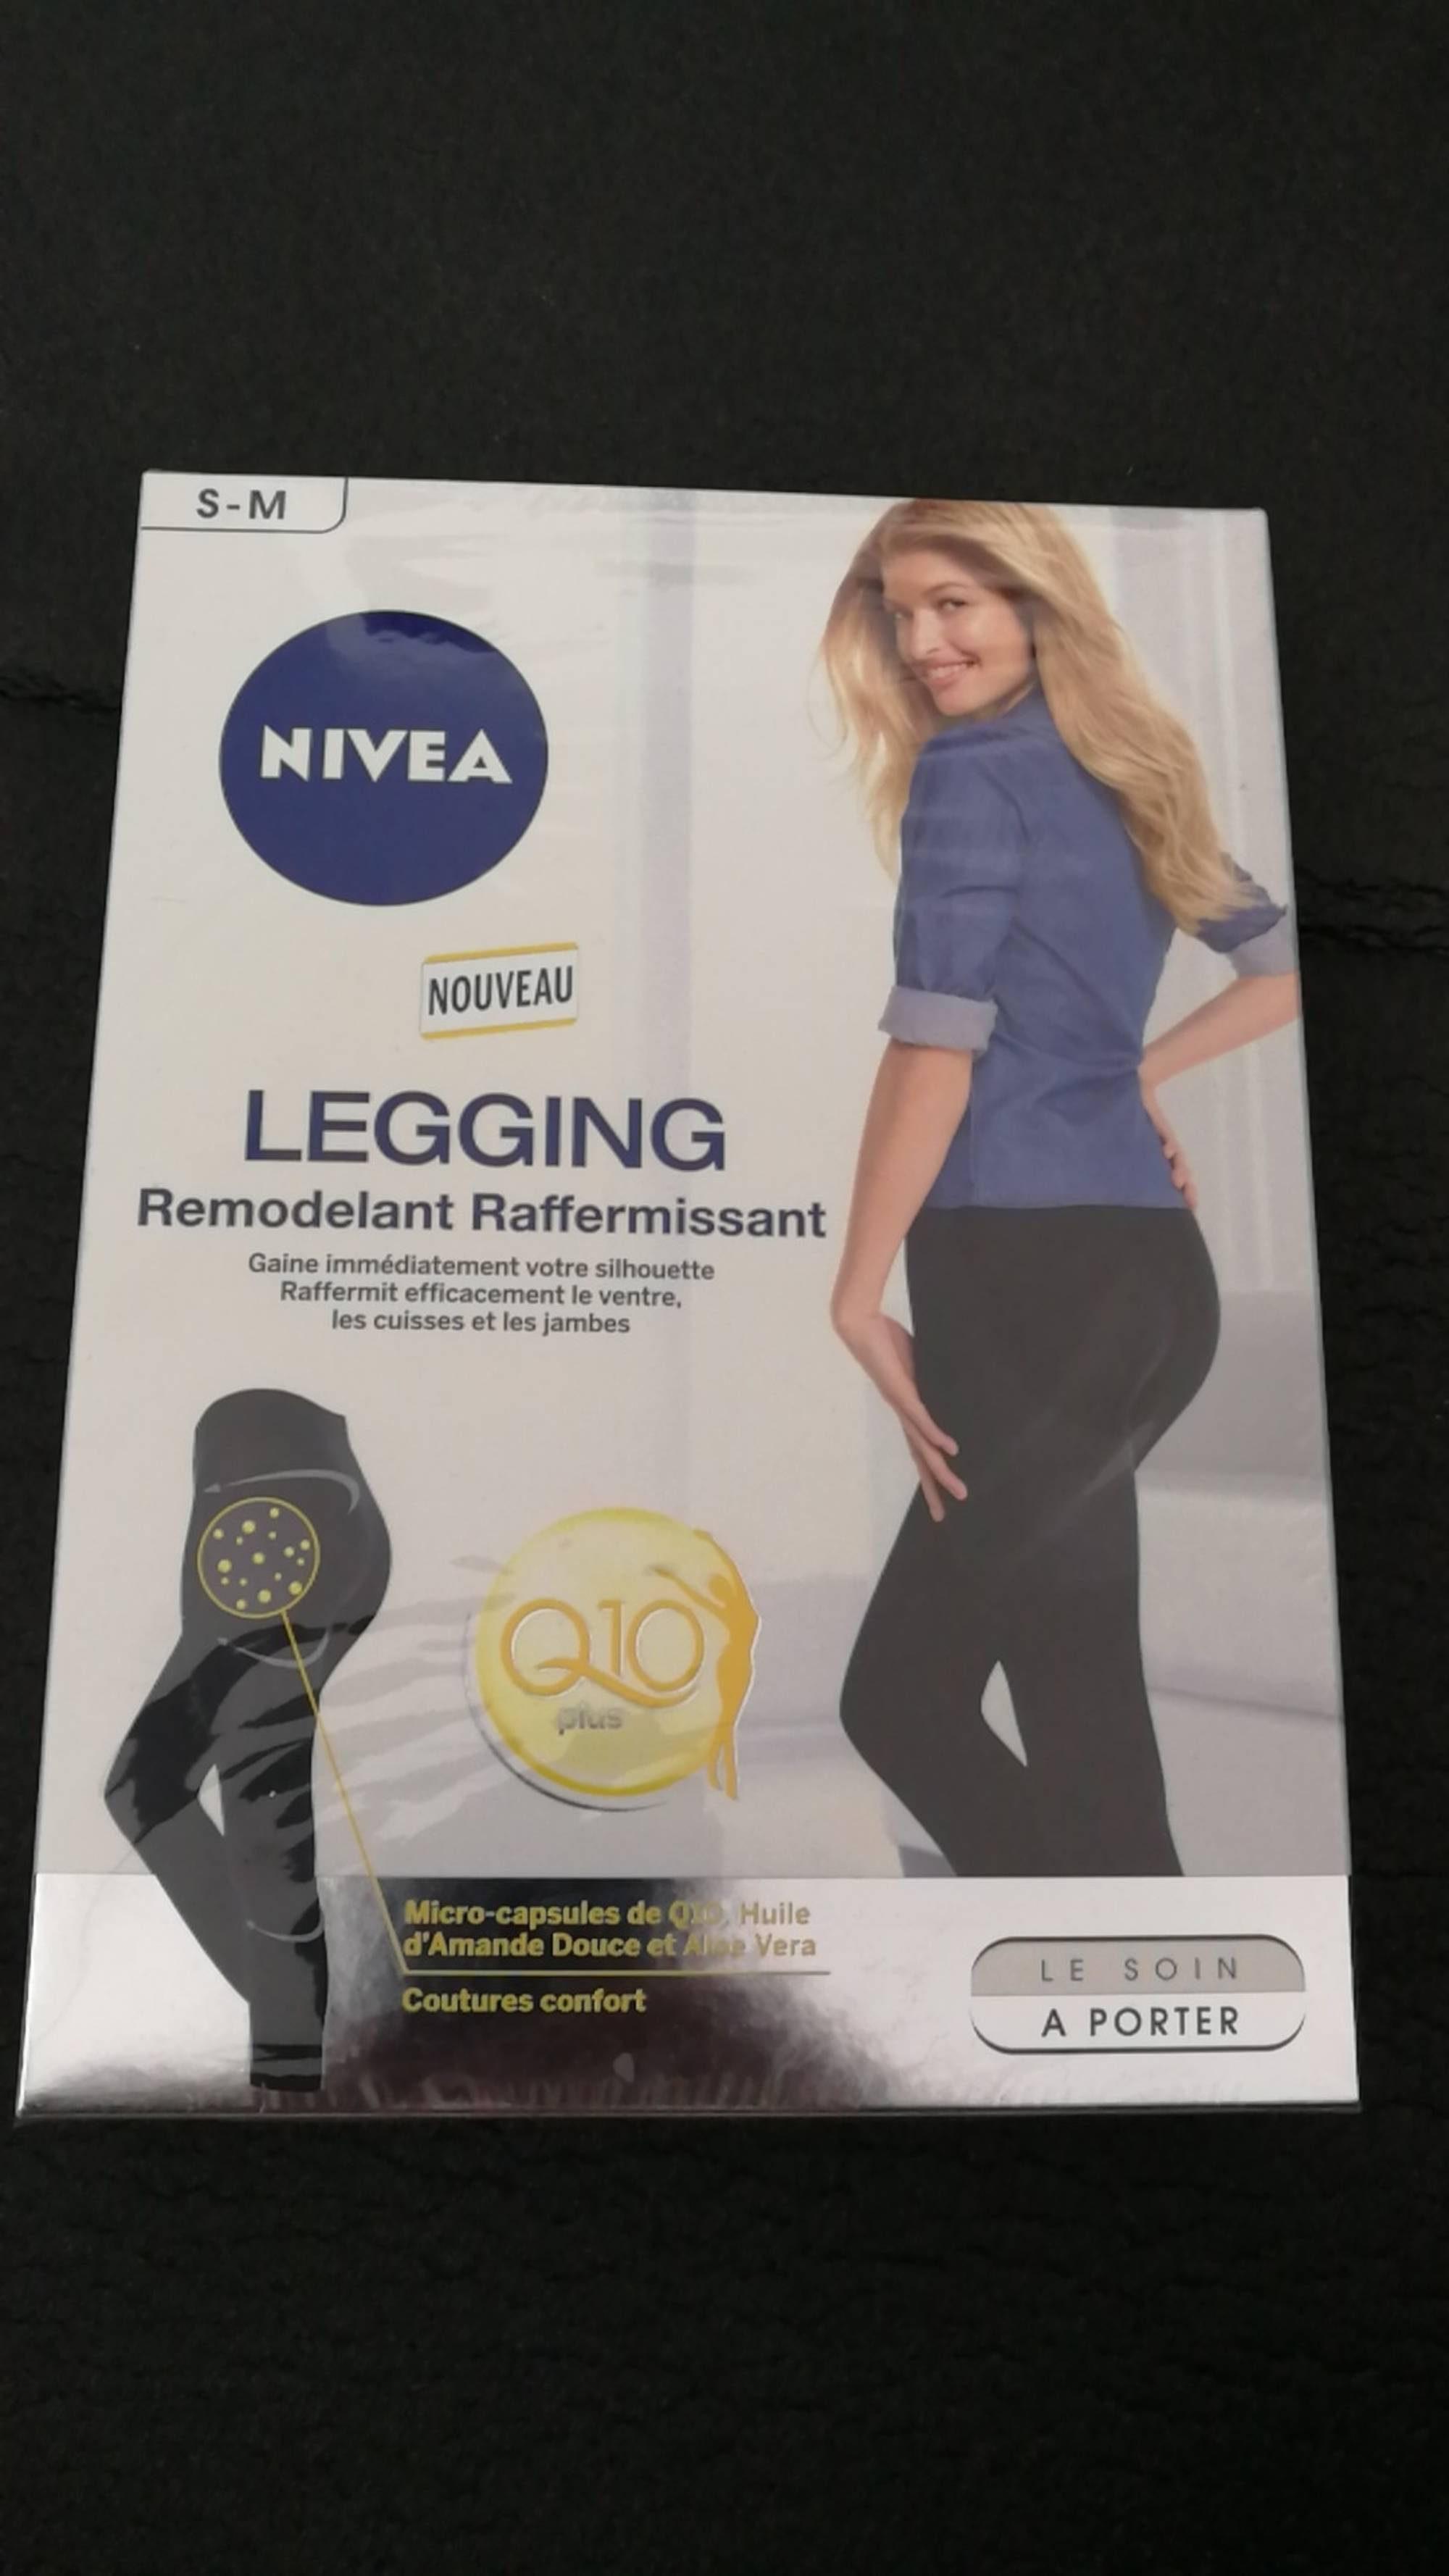 NIVEA - Legging - Remodelant raffermissant - Q10 plus